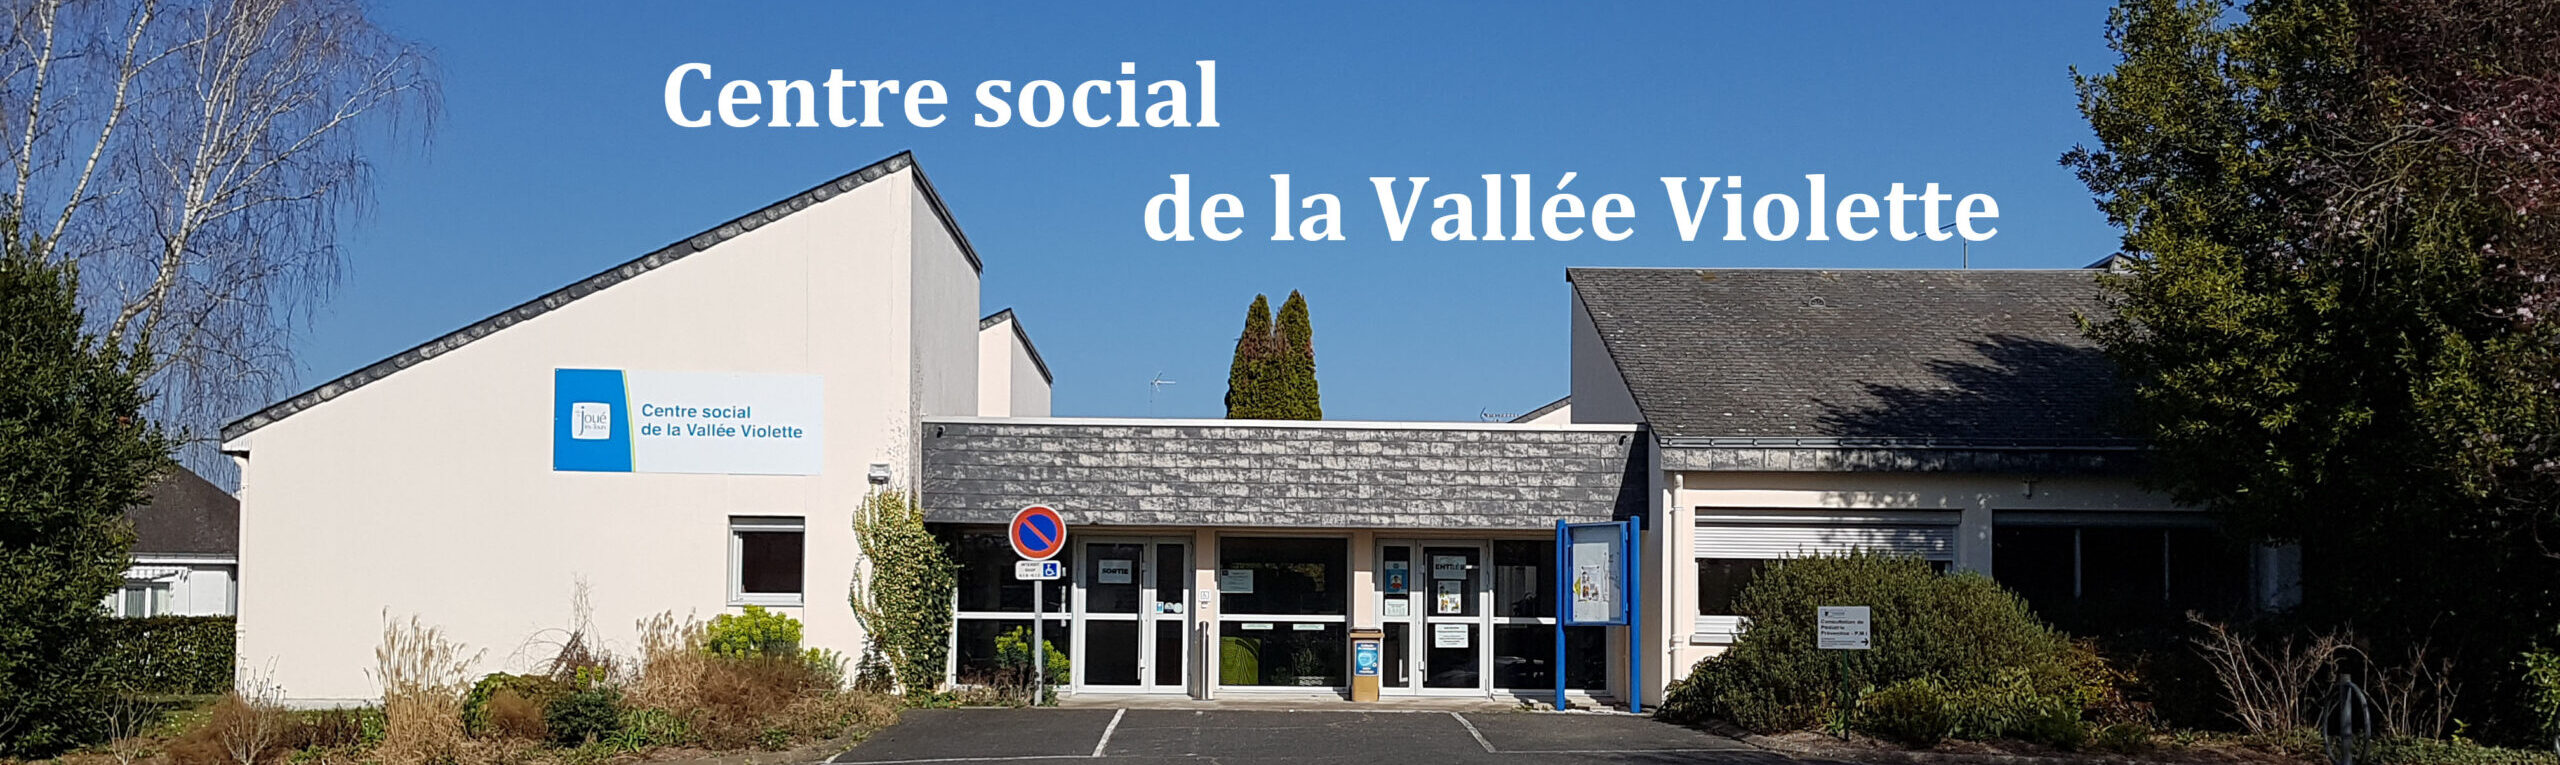 Centre social de la Vallée Violette